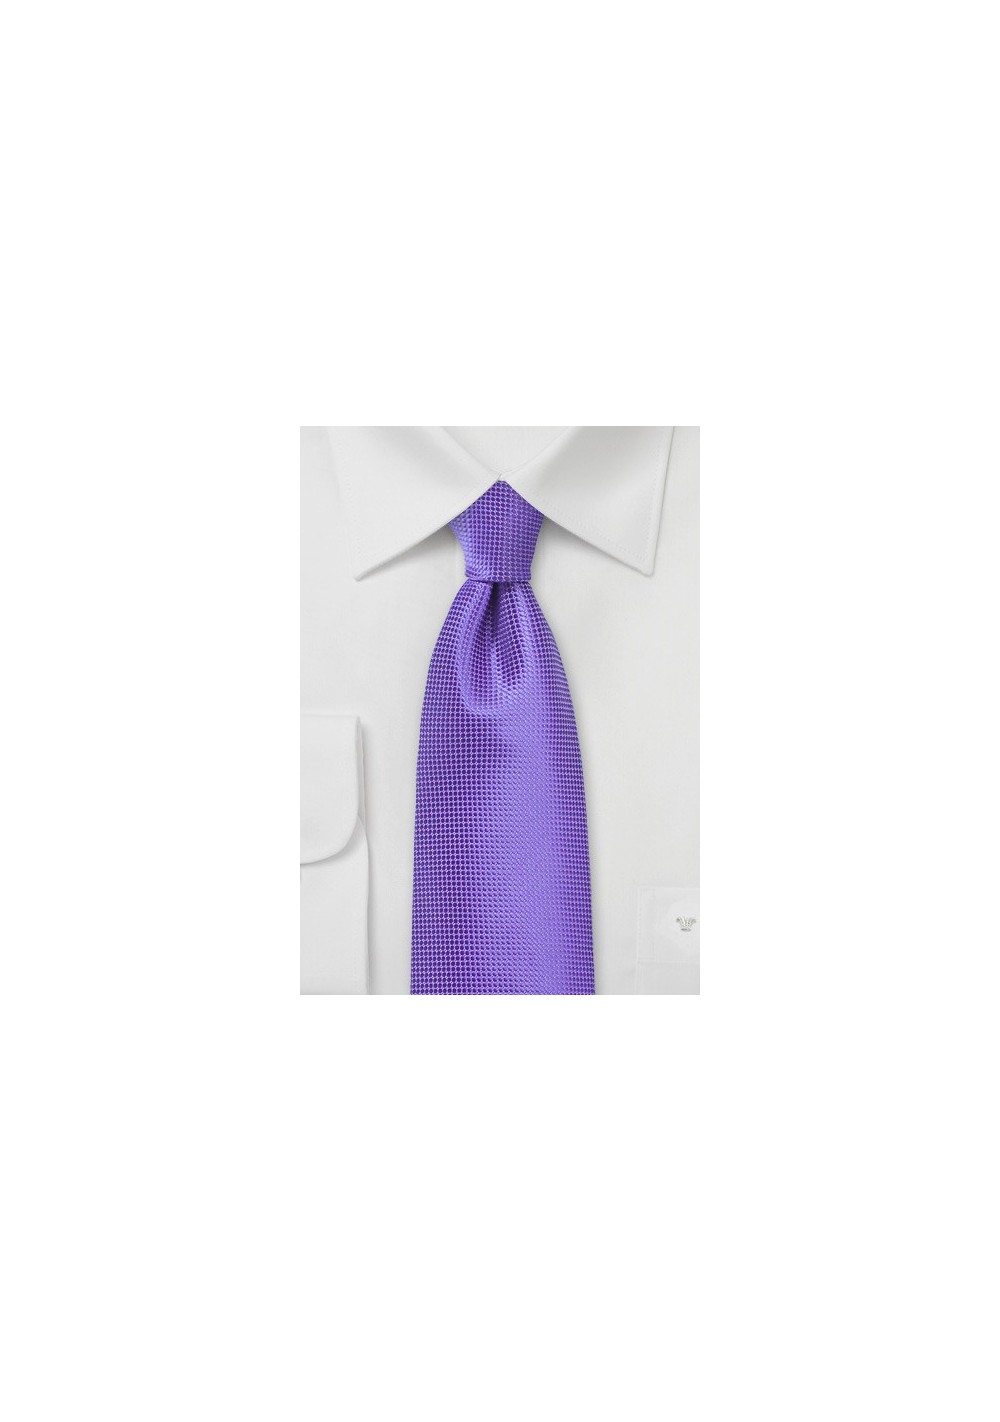 Bright Colored Tie in Opulent Purple